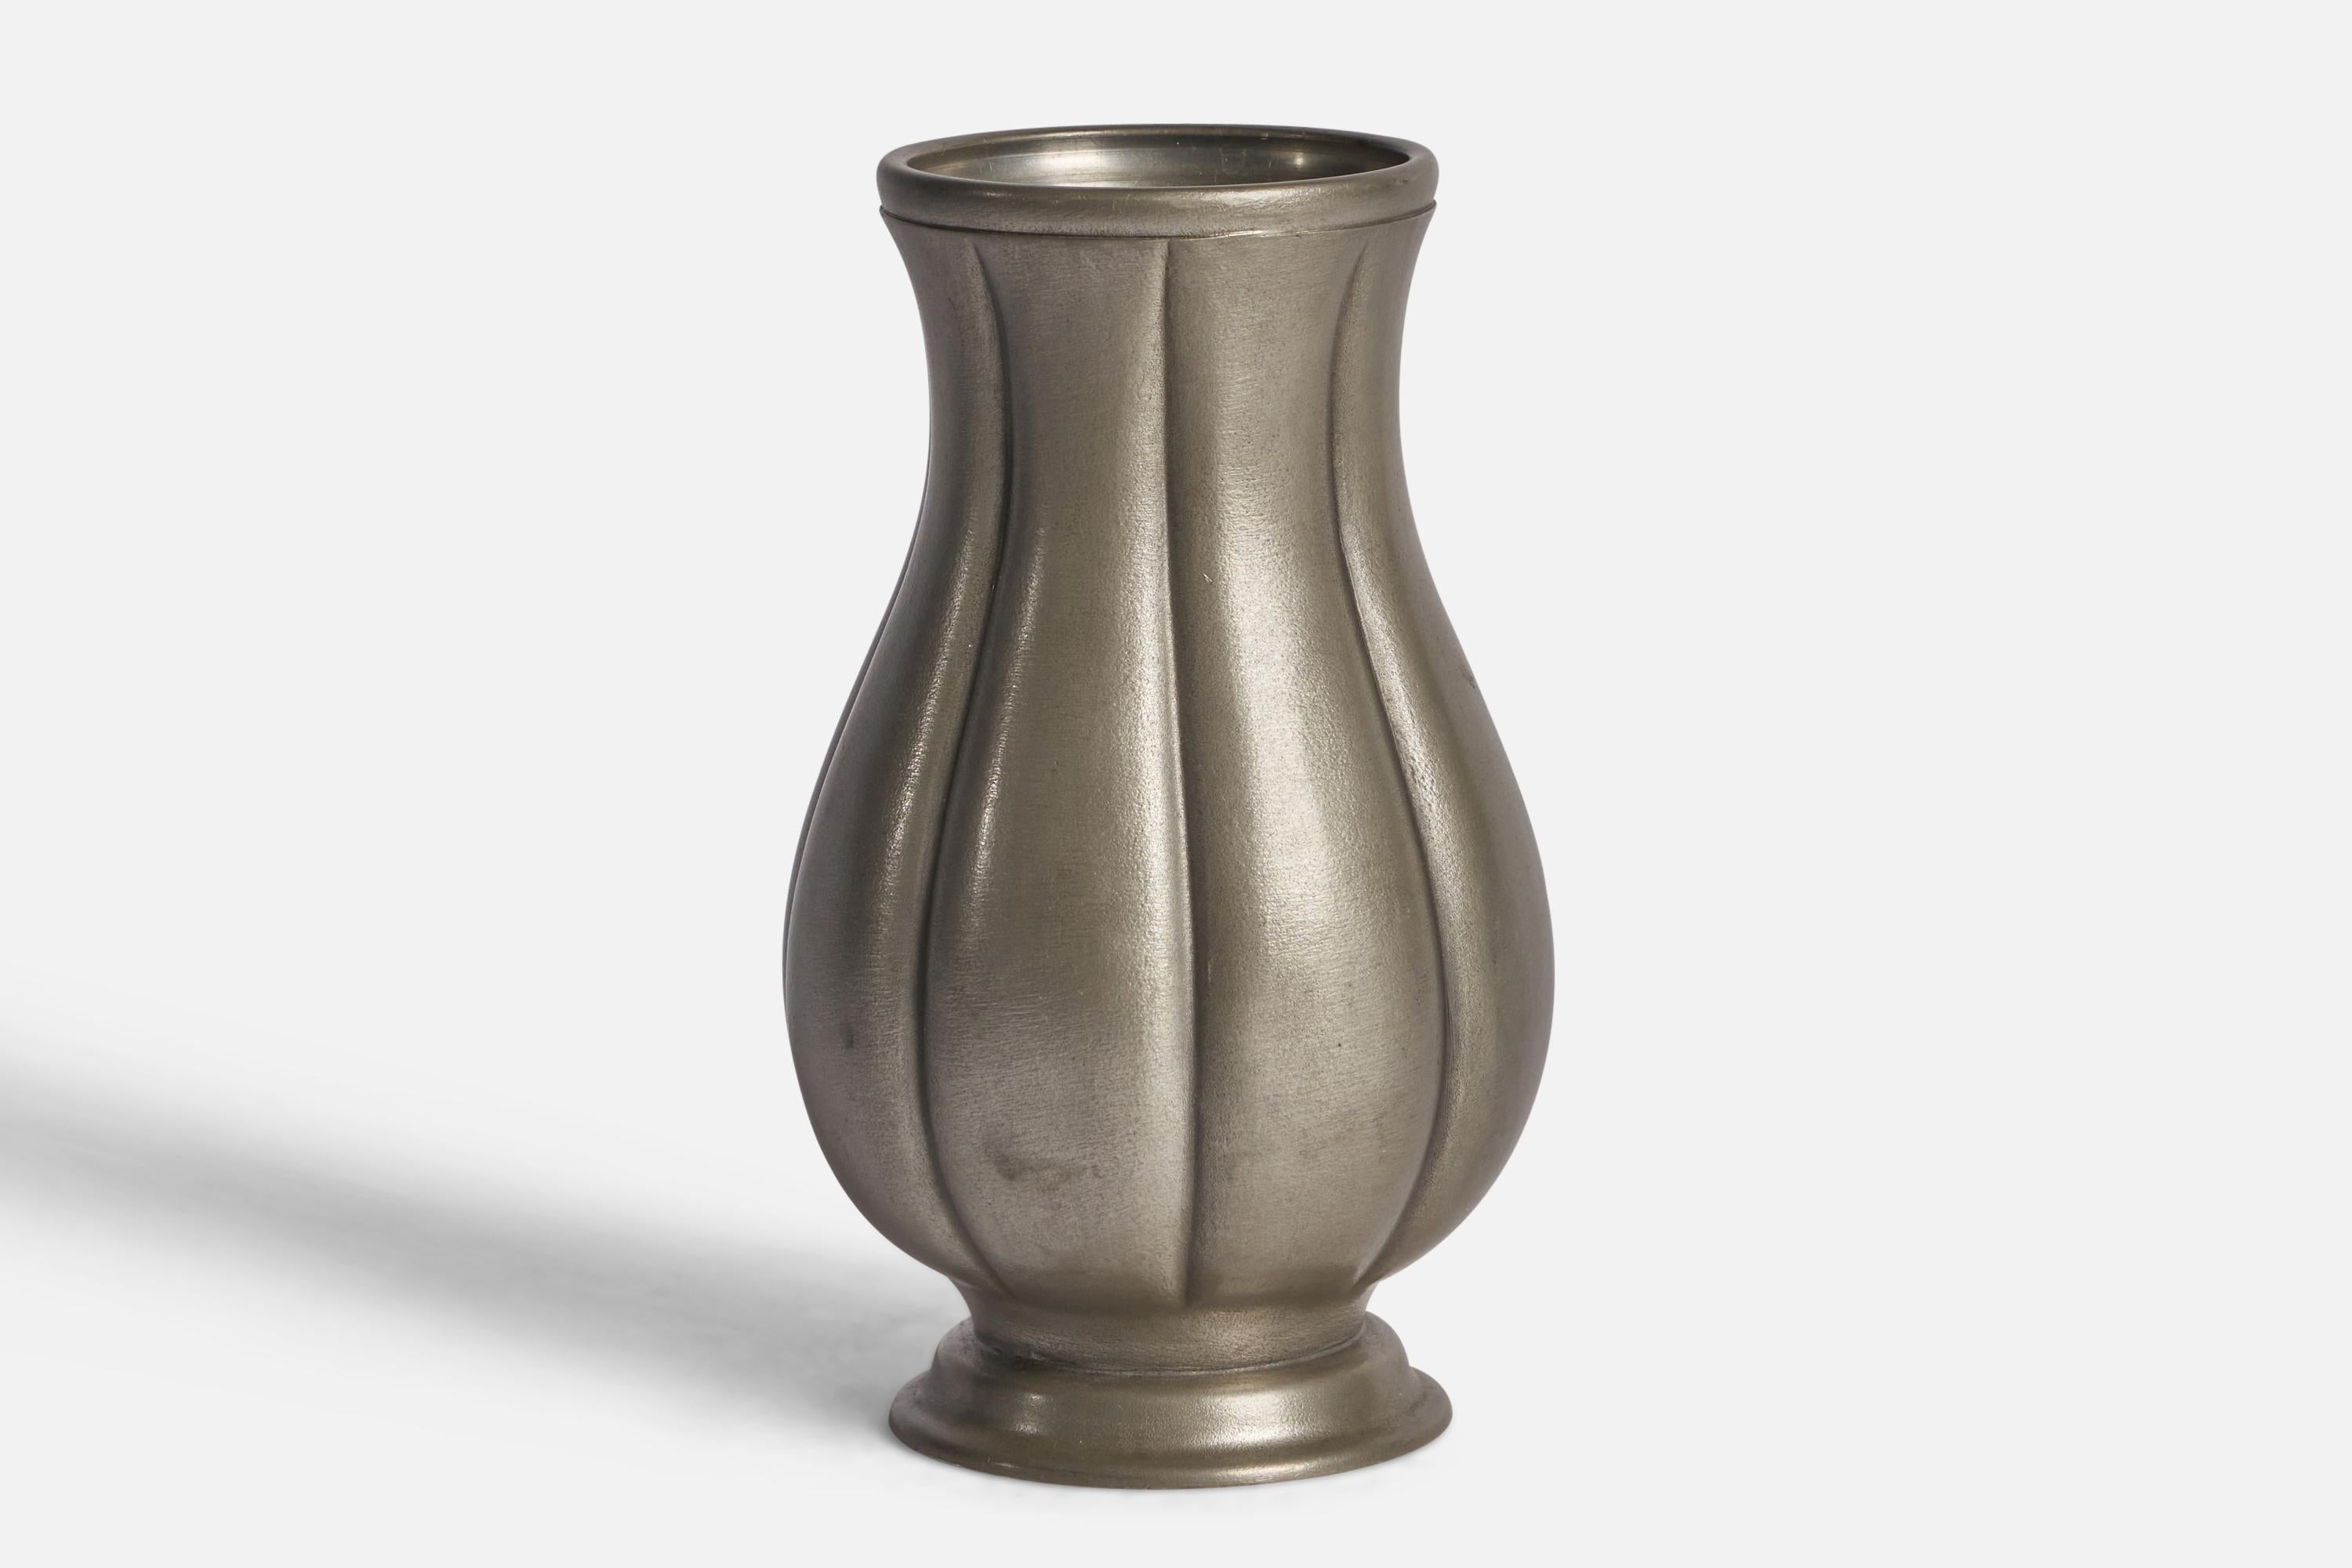 Geriffelte Vase aus Zinn, entworfen von Edvin Ollers und hergestellt von Shreuder & Olson, Schweden, 1952.

Stempel 